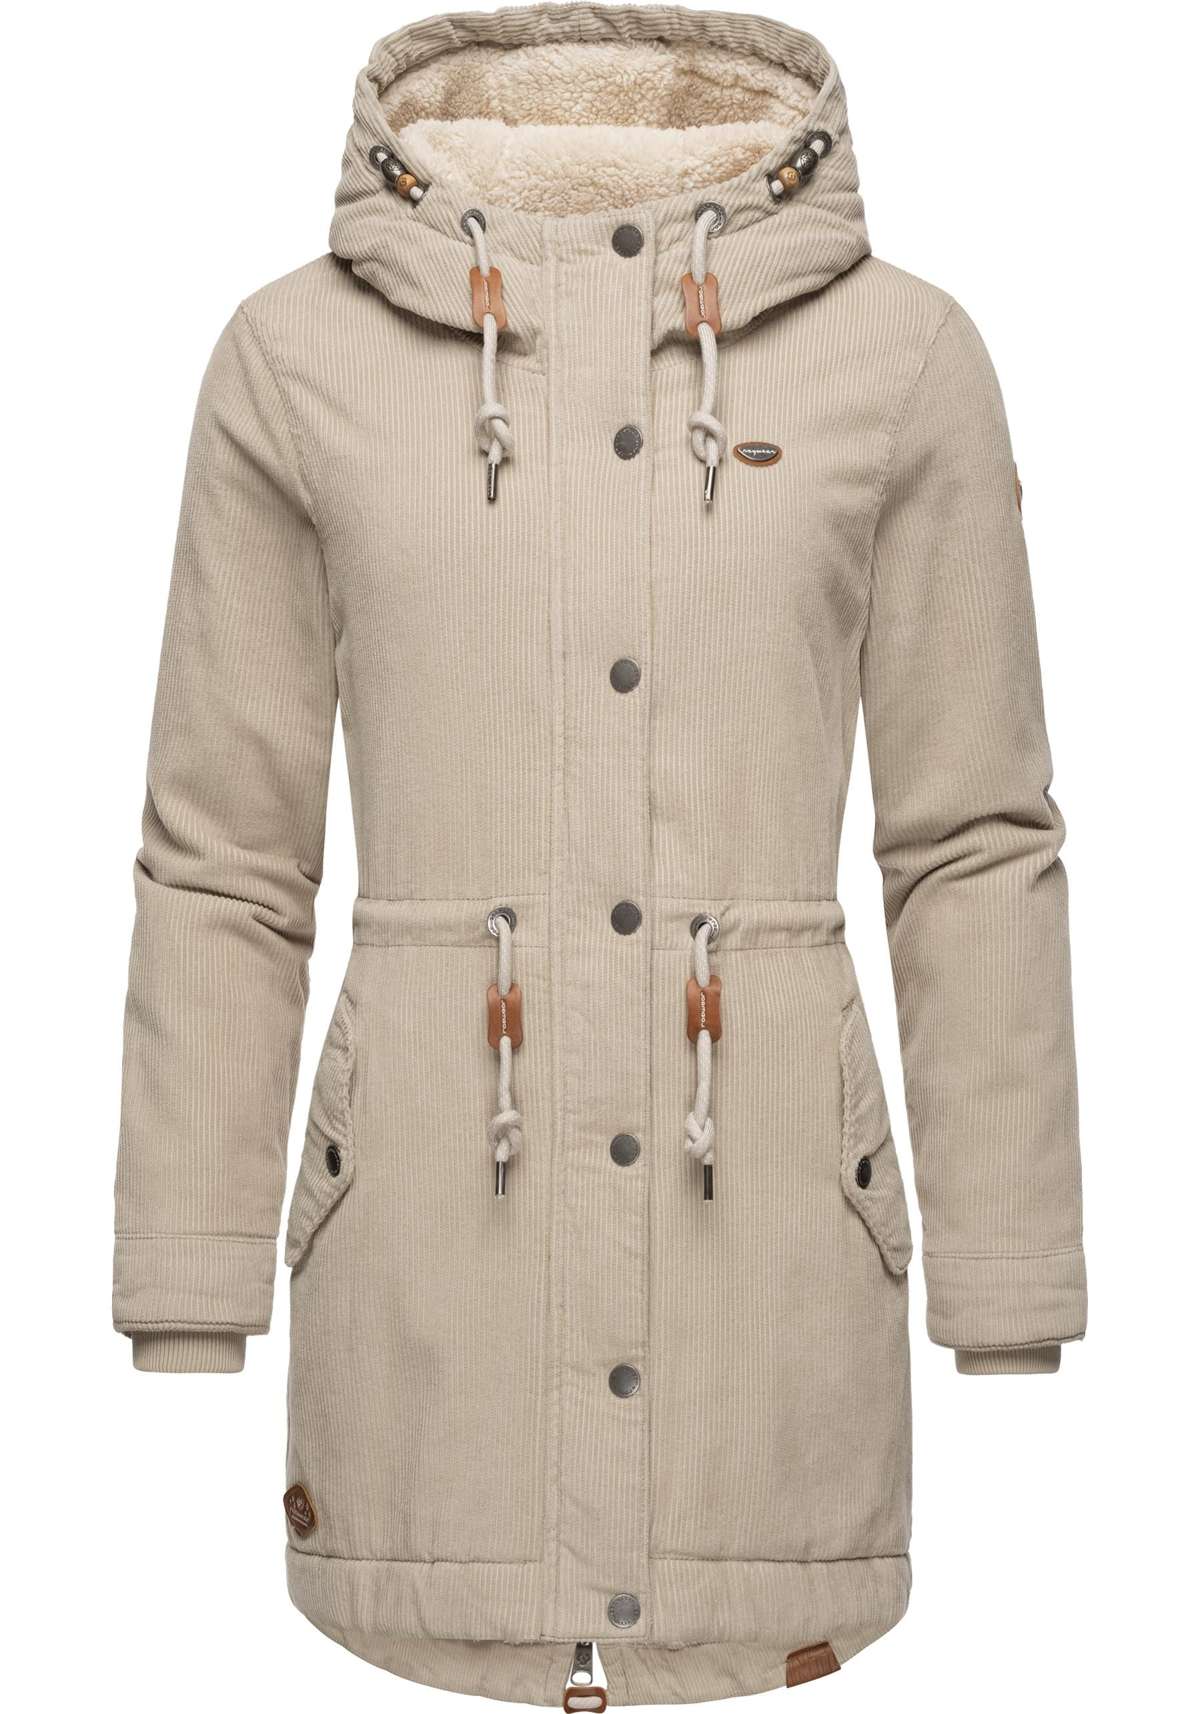 Зимняя куртка с капюшоном, стильное женское вельветовое пальто с капюшоном.